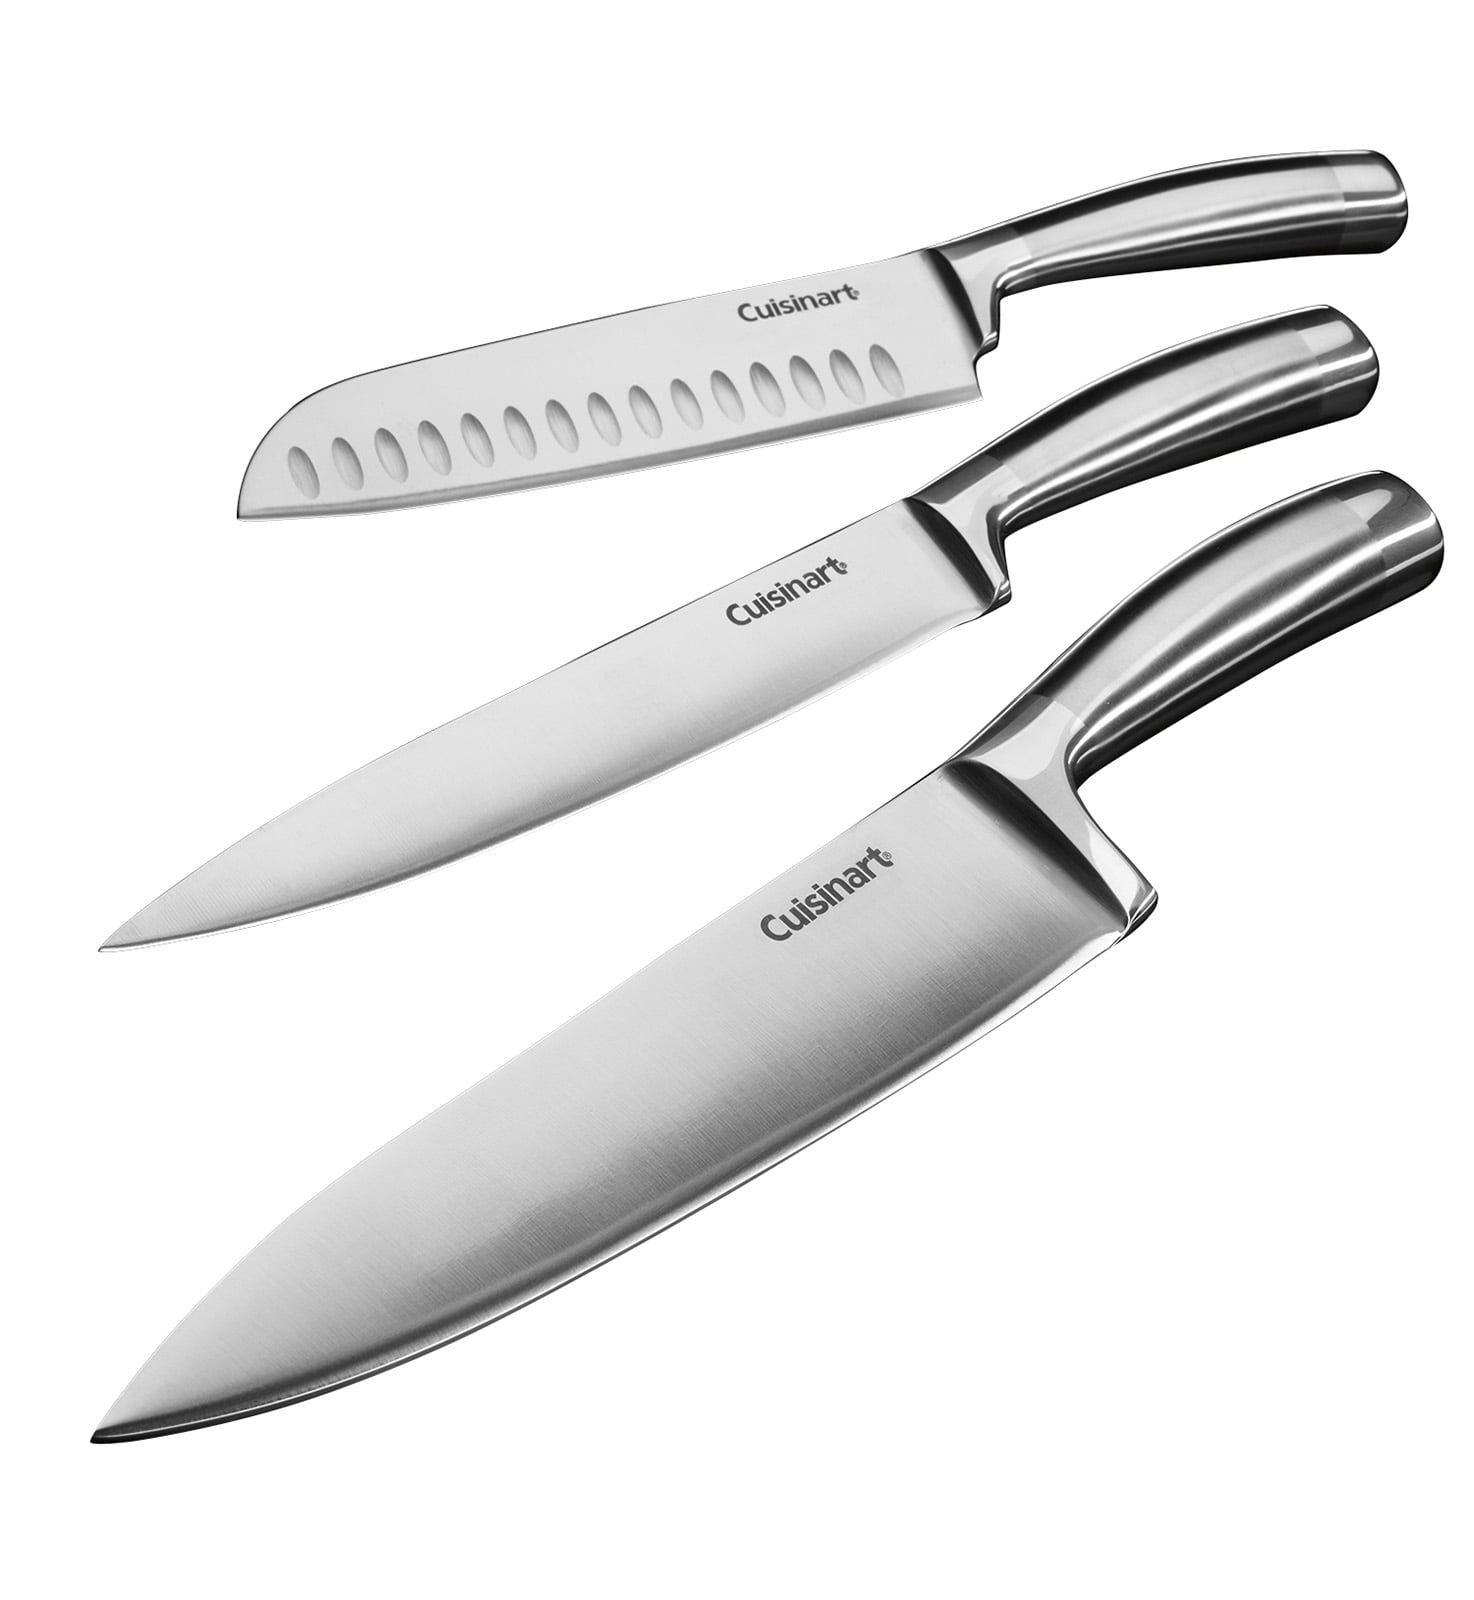 Острые кухонные ножи. Cutlery Stainless Steel кухонный нож. Нож кухонный “Stainless Steel” 2386. Blaupunkt ножи кухонные. Ножи PROHOTEL Stainless Steel 3cr13.